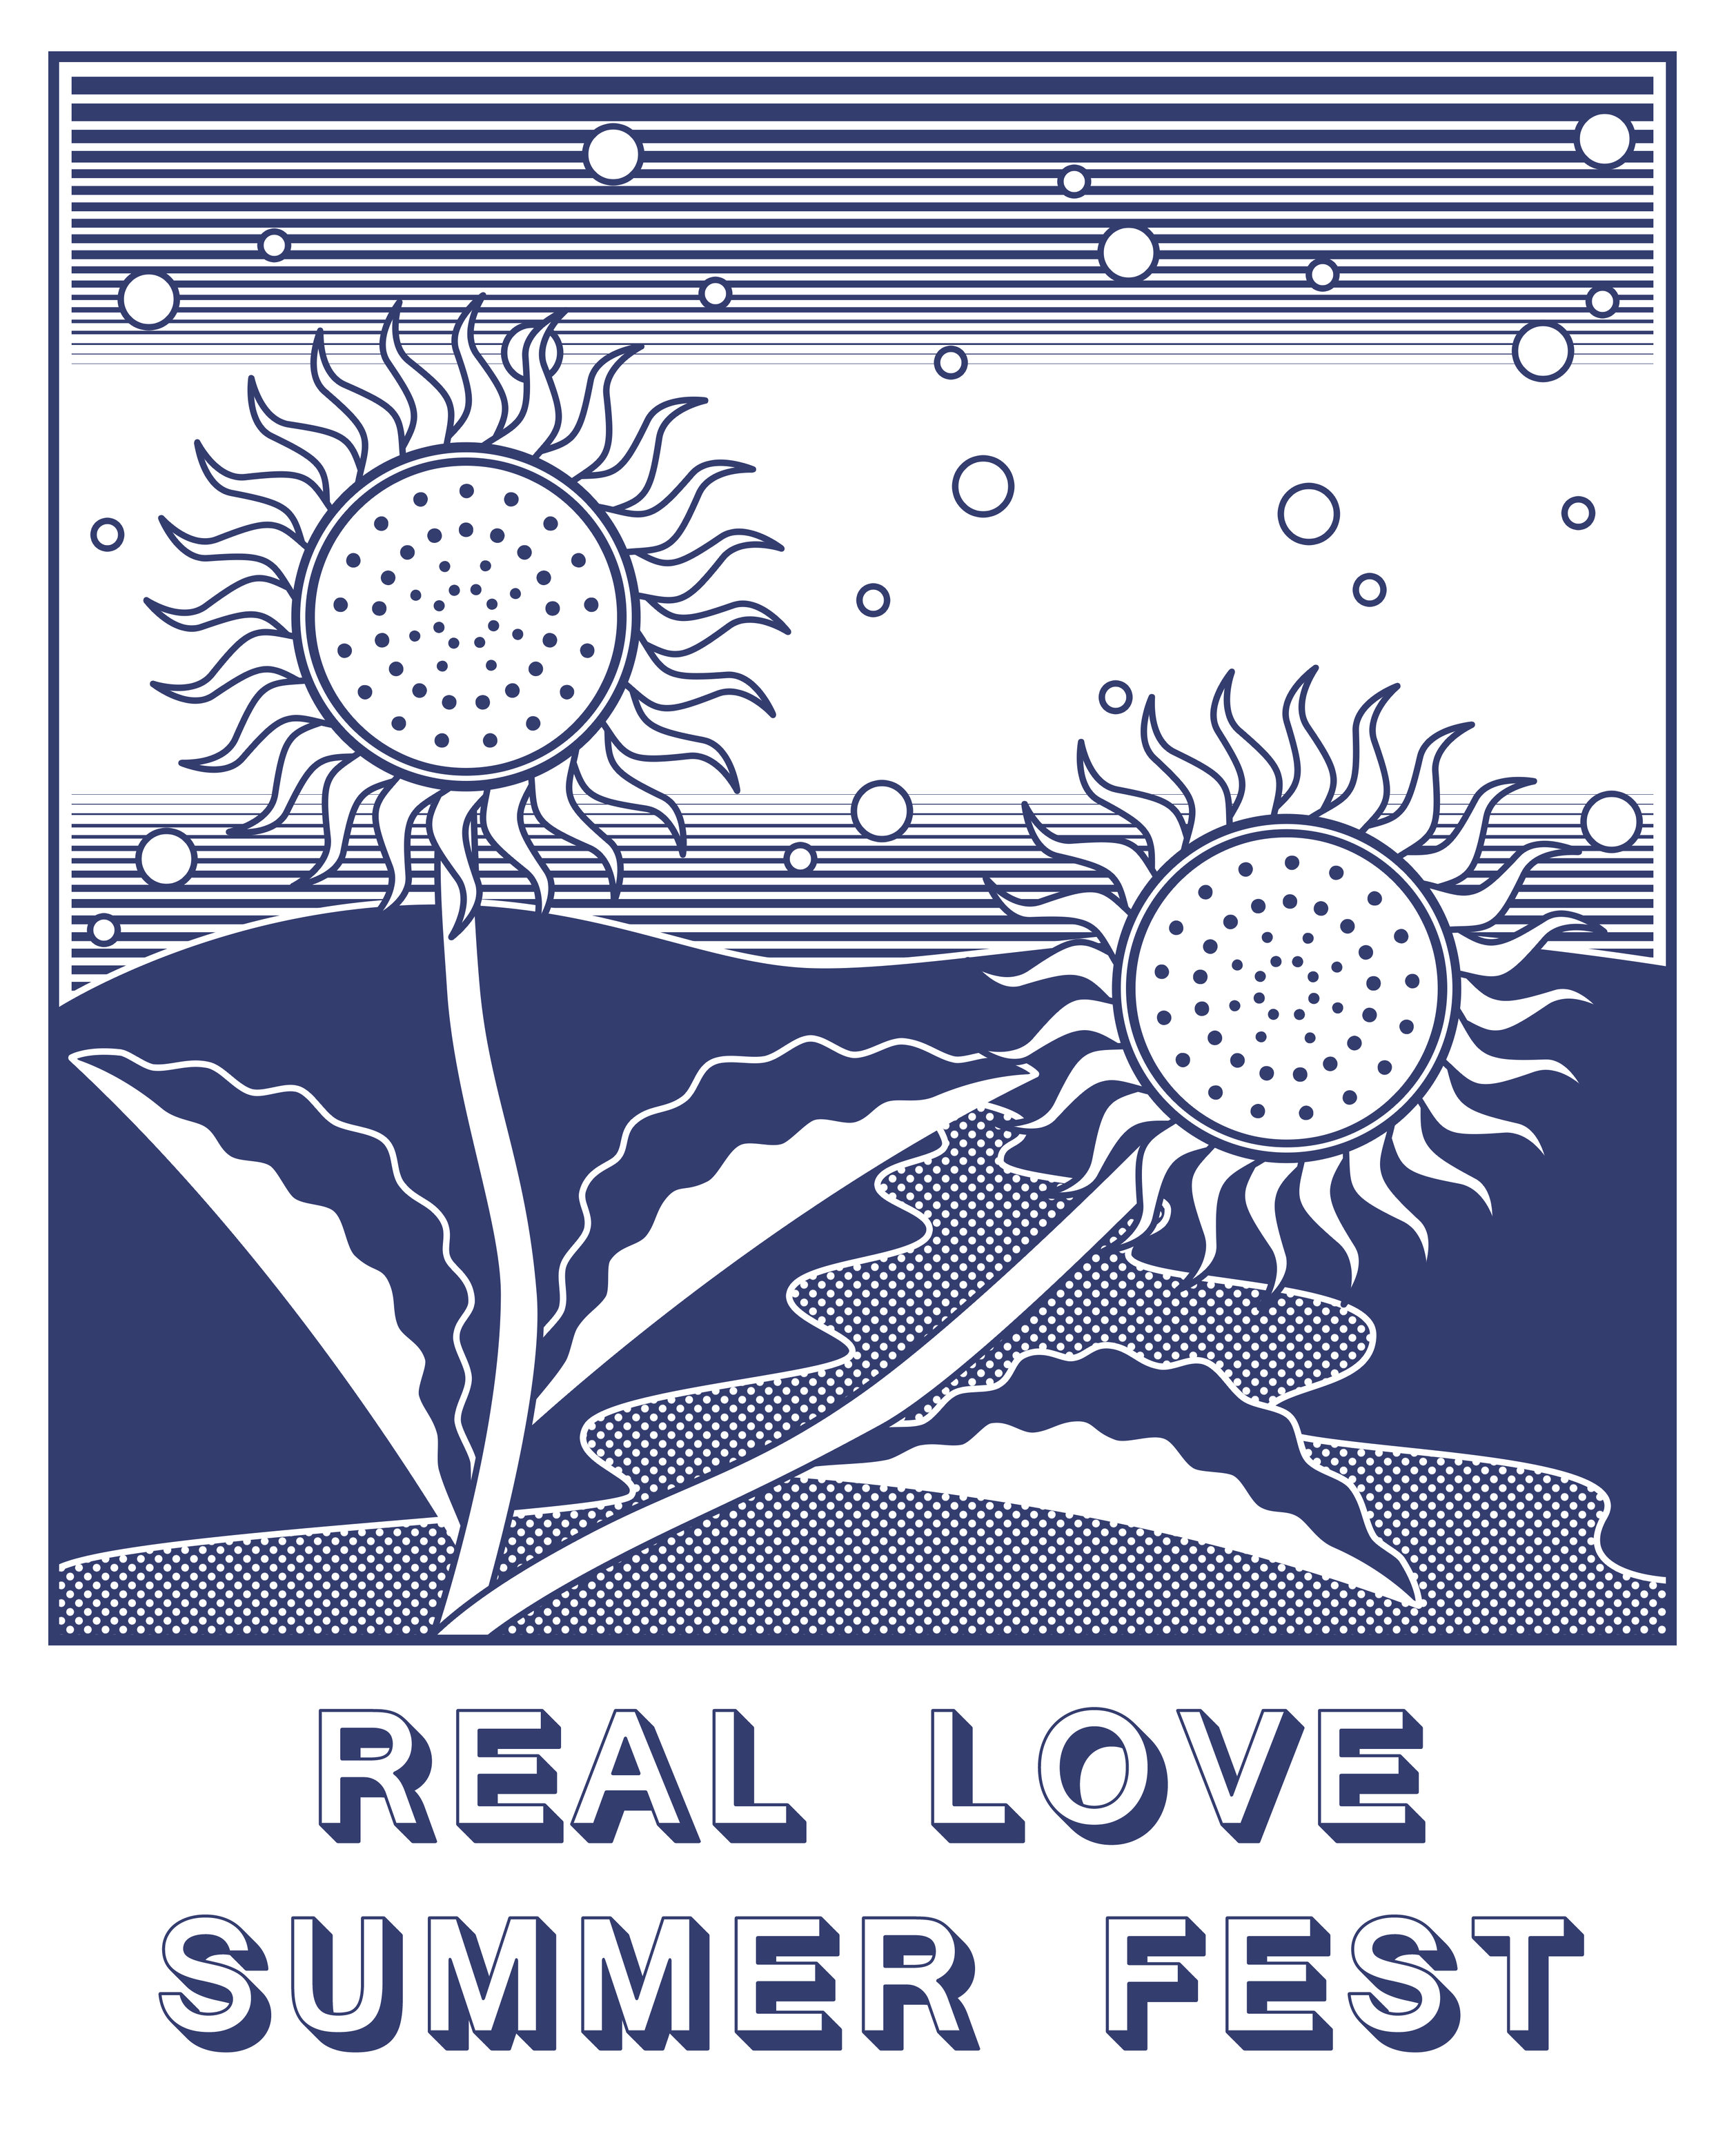 T-shirt design for Real Love Summer Fest